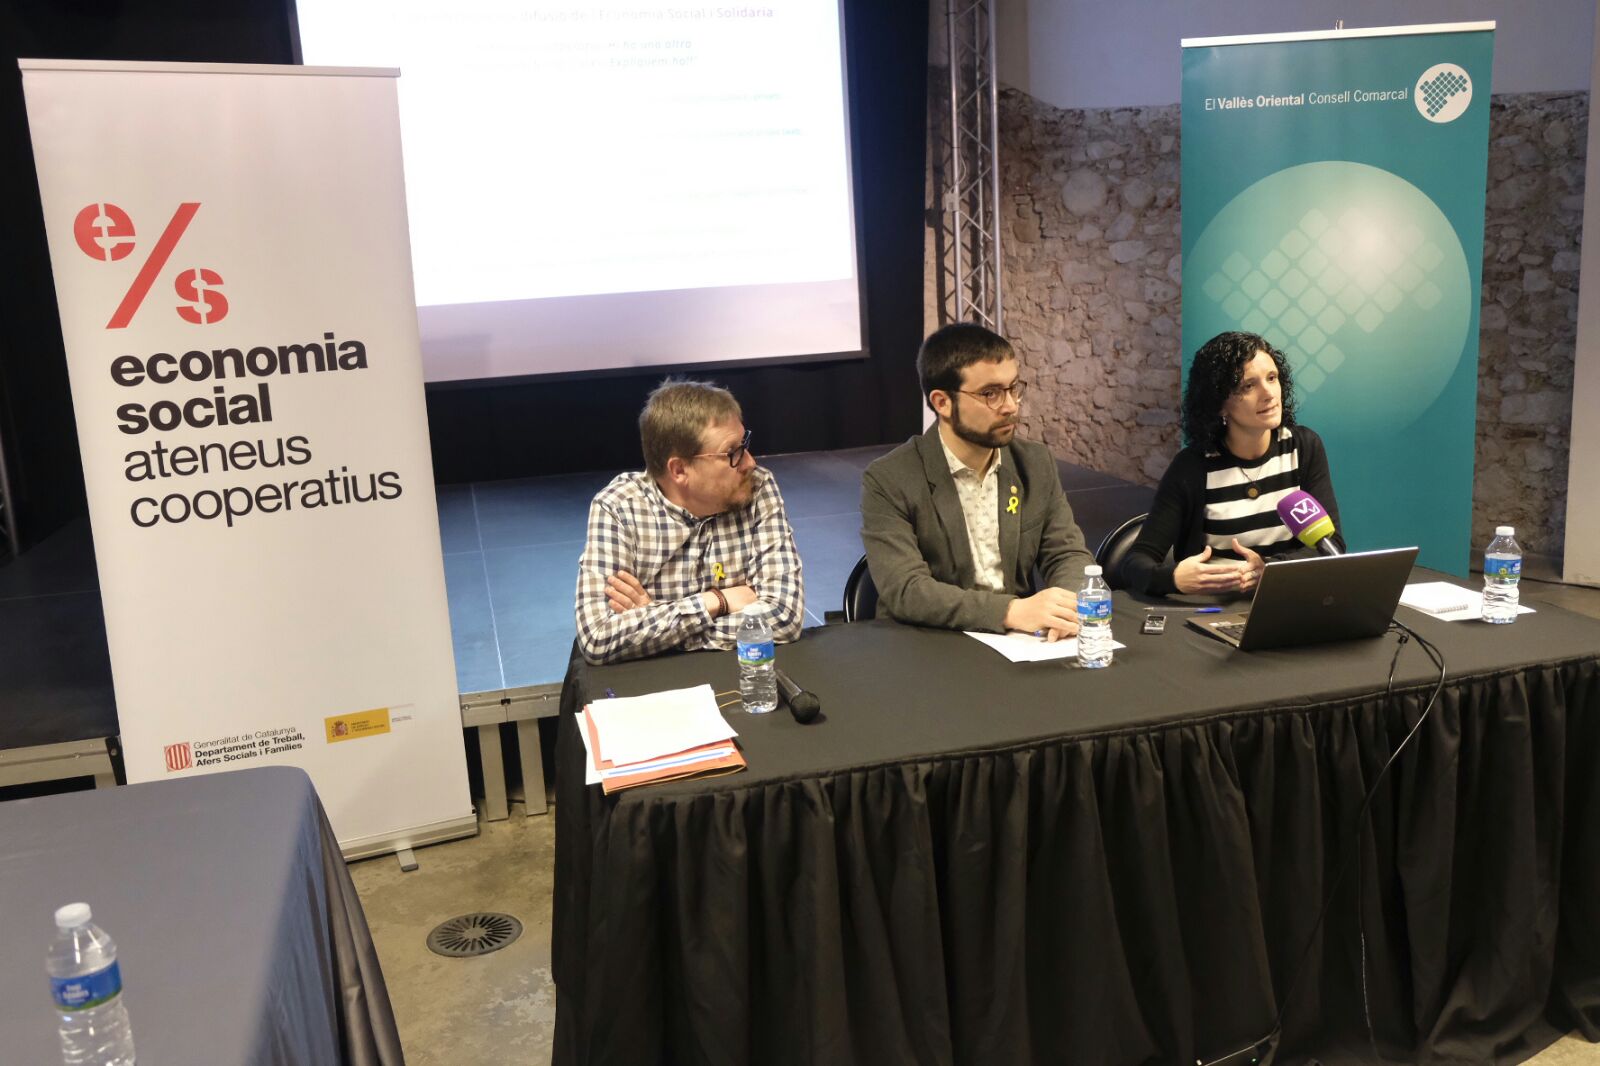 D'esquerra a dreta, Vidal, Candela i Lamata en la presentació de l'ateneu